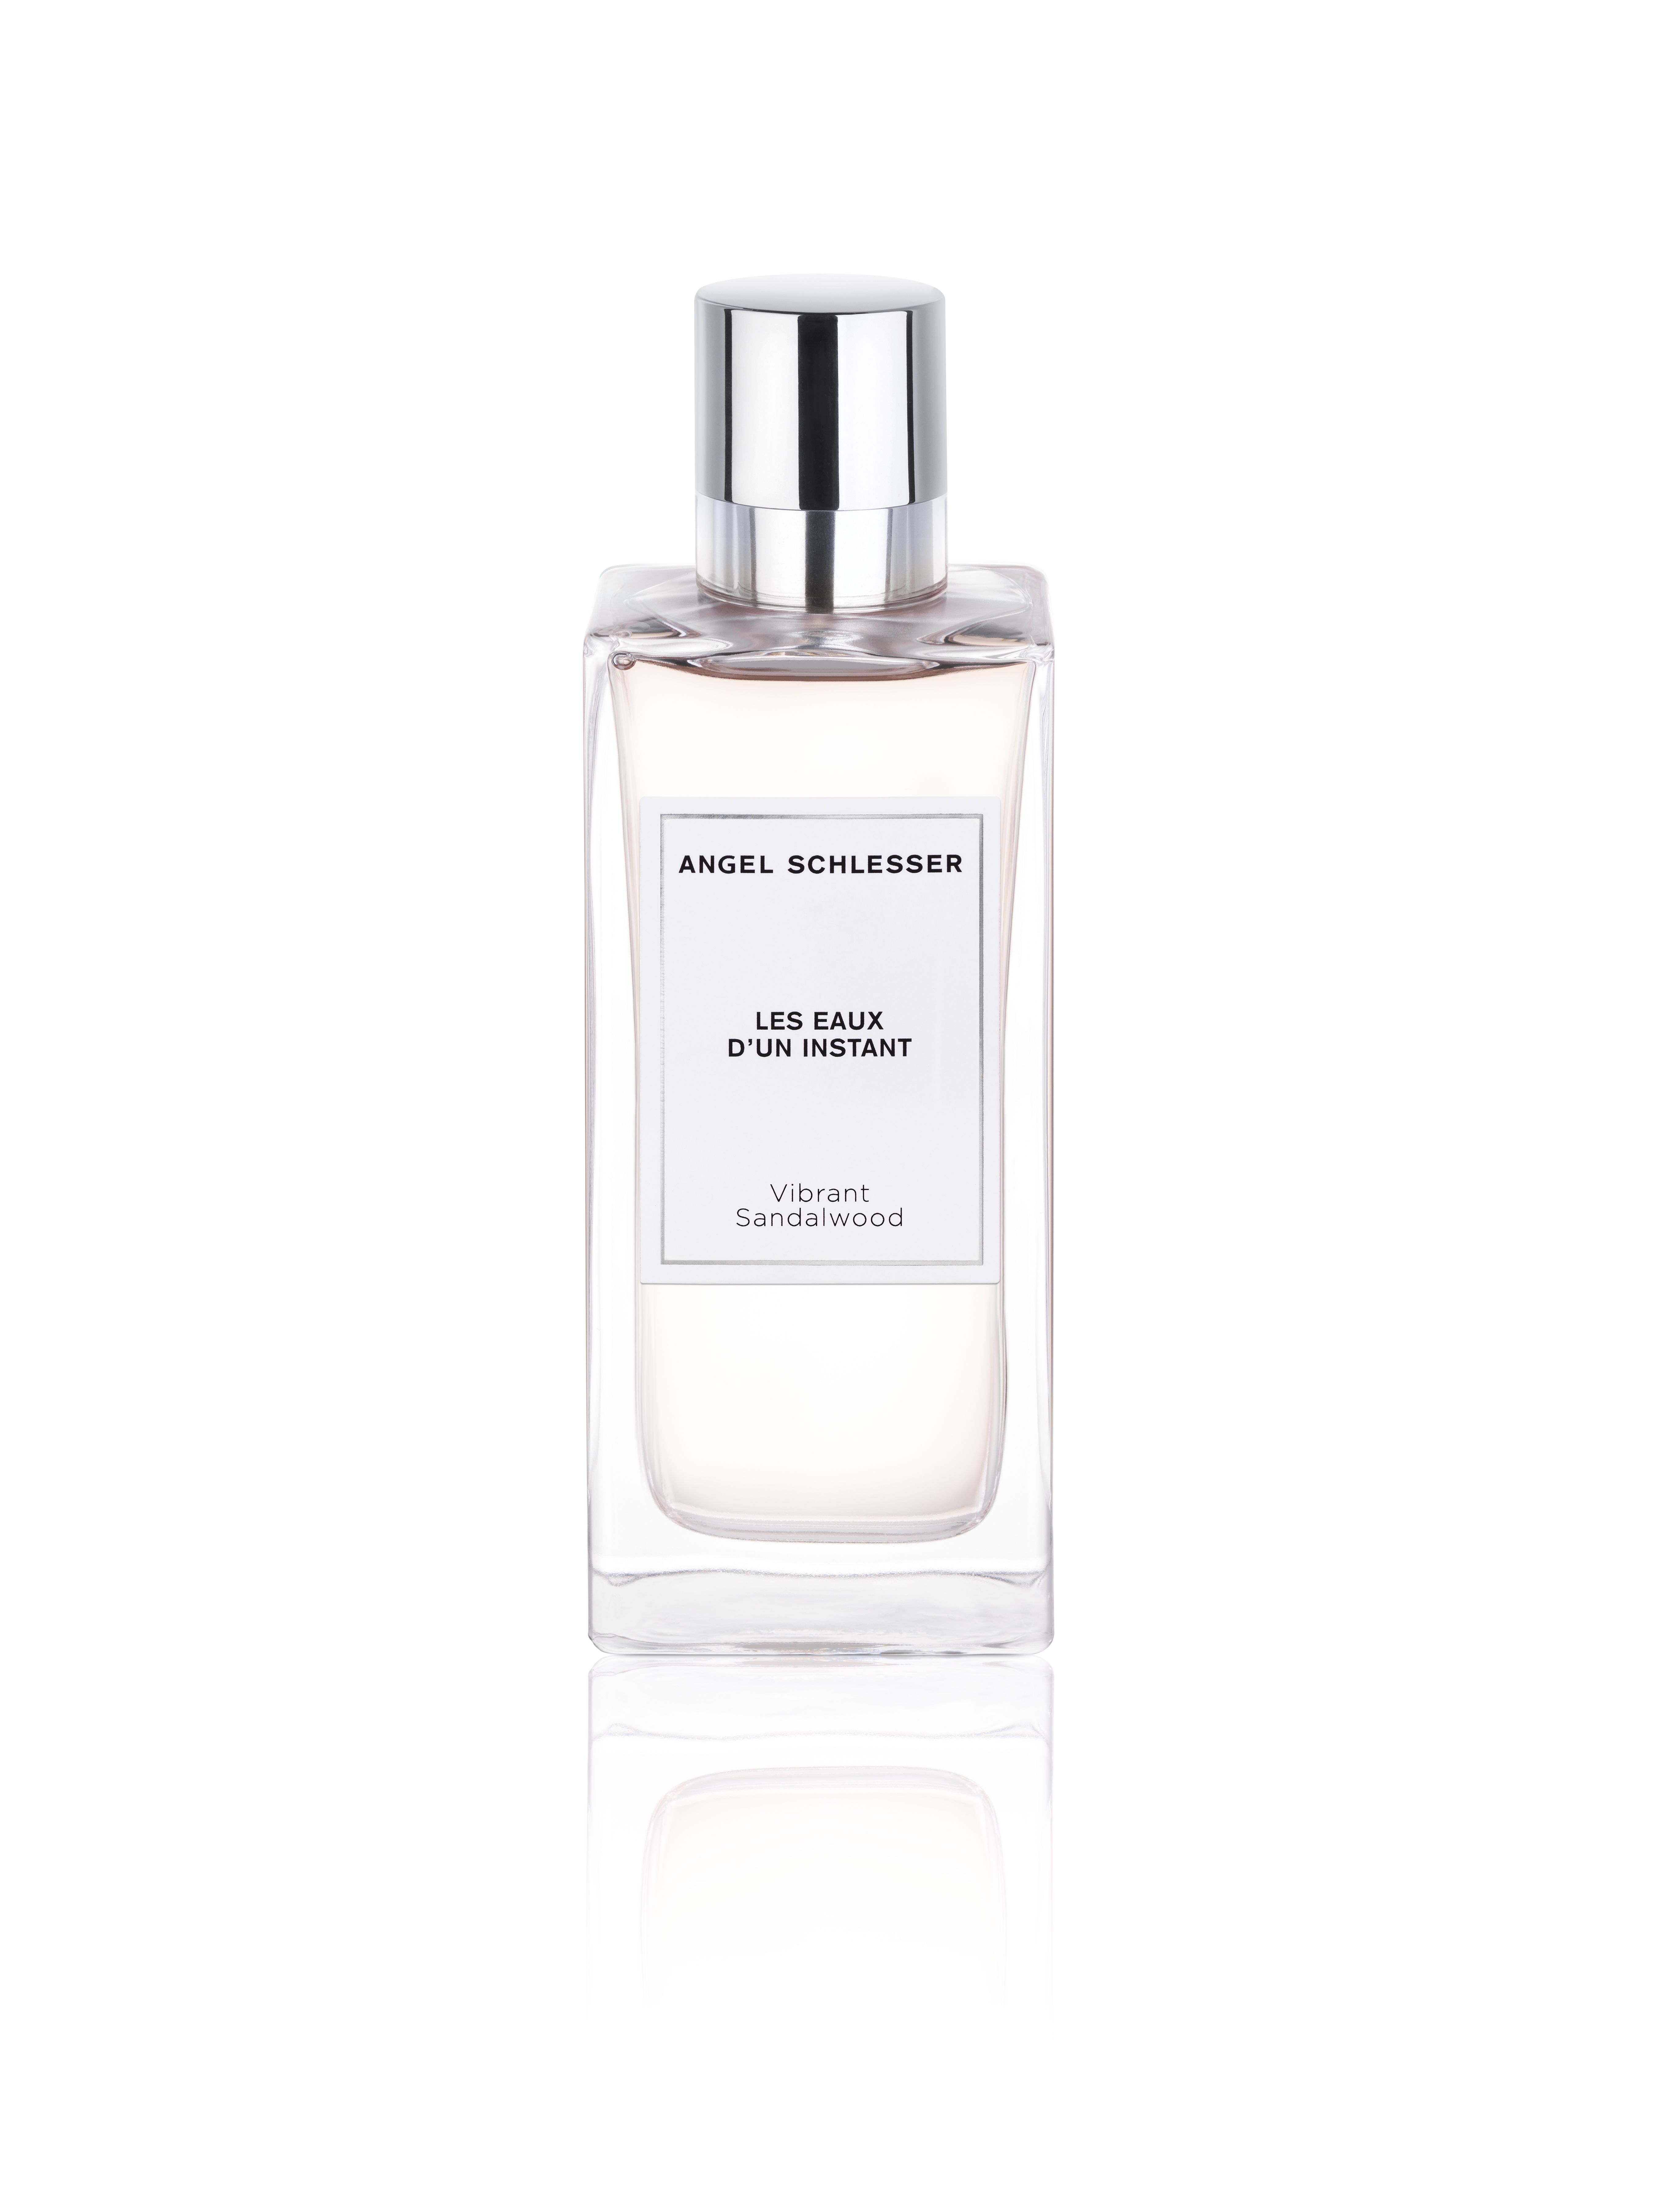 Vibrant Sandalwood Angel Schlesser perfume - a new fragrance for women ...